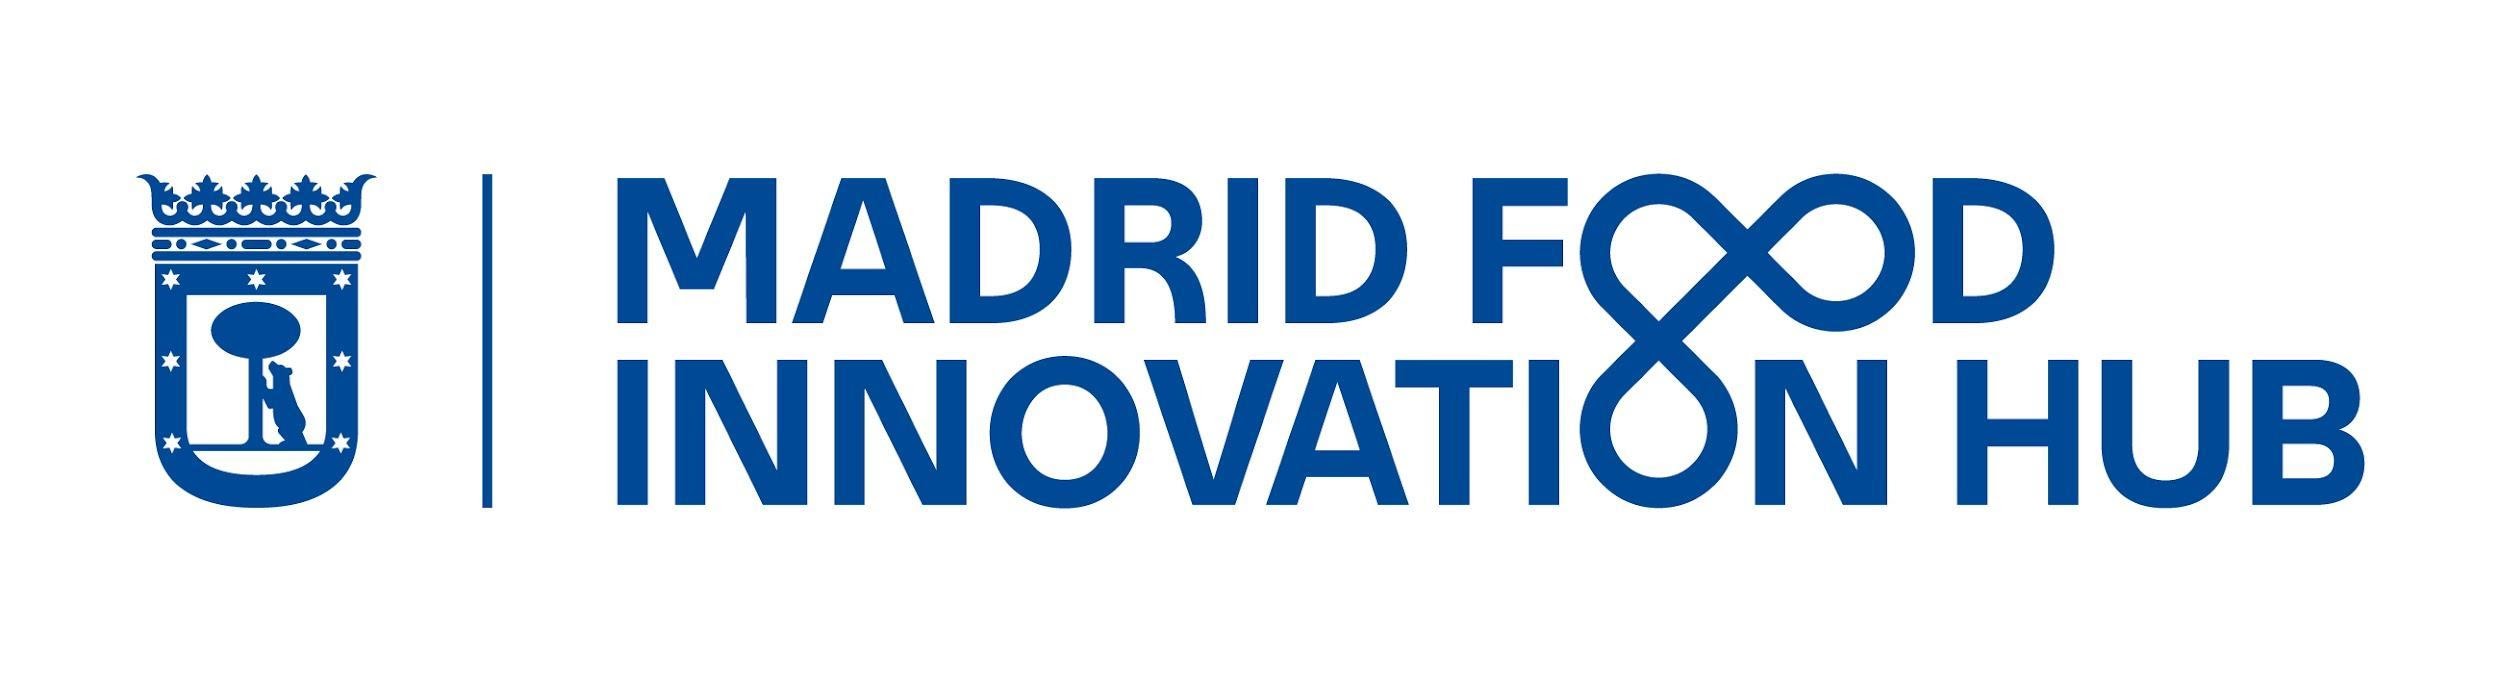 Madrid Food Innovation Hub lanza el primer programa de incubación para HORECA de la capital - La Viña